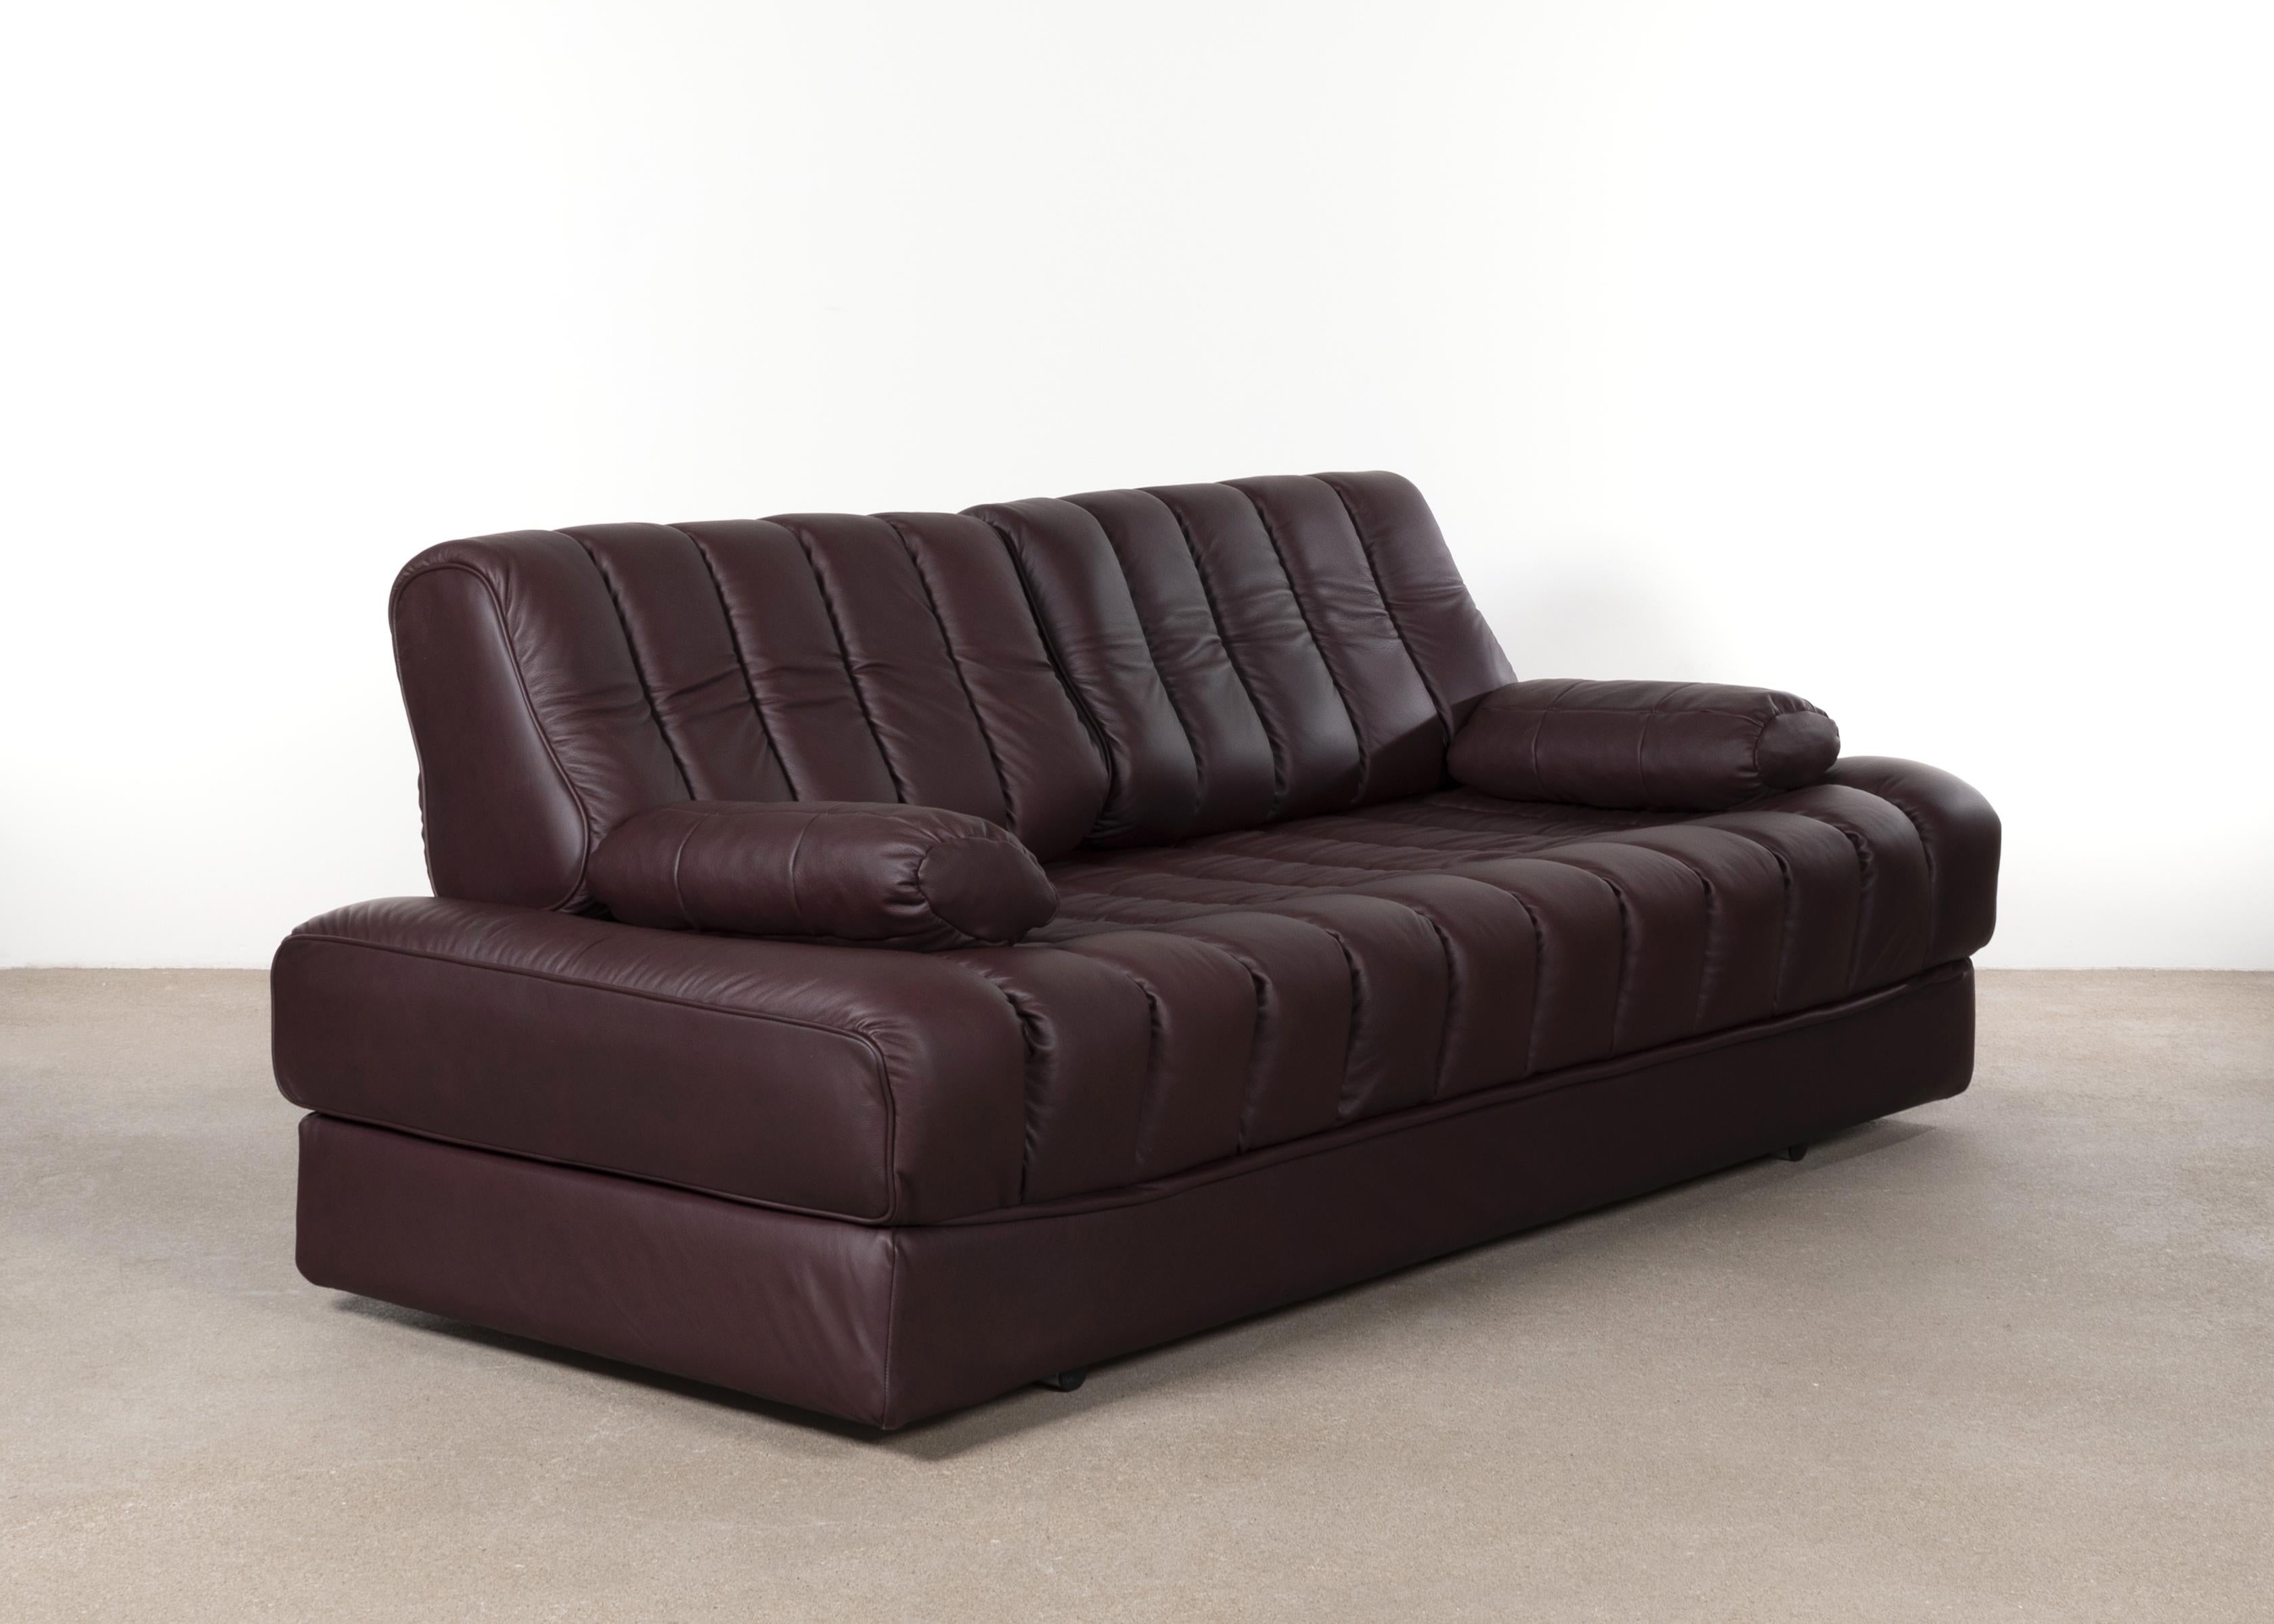 Bequemes und elegantes Sofa, Daybed und Loveseat von De Sede Switzerland 1975 DS 85. Das Sofa kann leicht in ein Doppelbett verwandelt werden. Das Sofa ist neu gepolstert mit sehr weichem Analine-Leder in der Farbe aubergine / braun. Alle in sehr